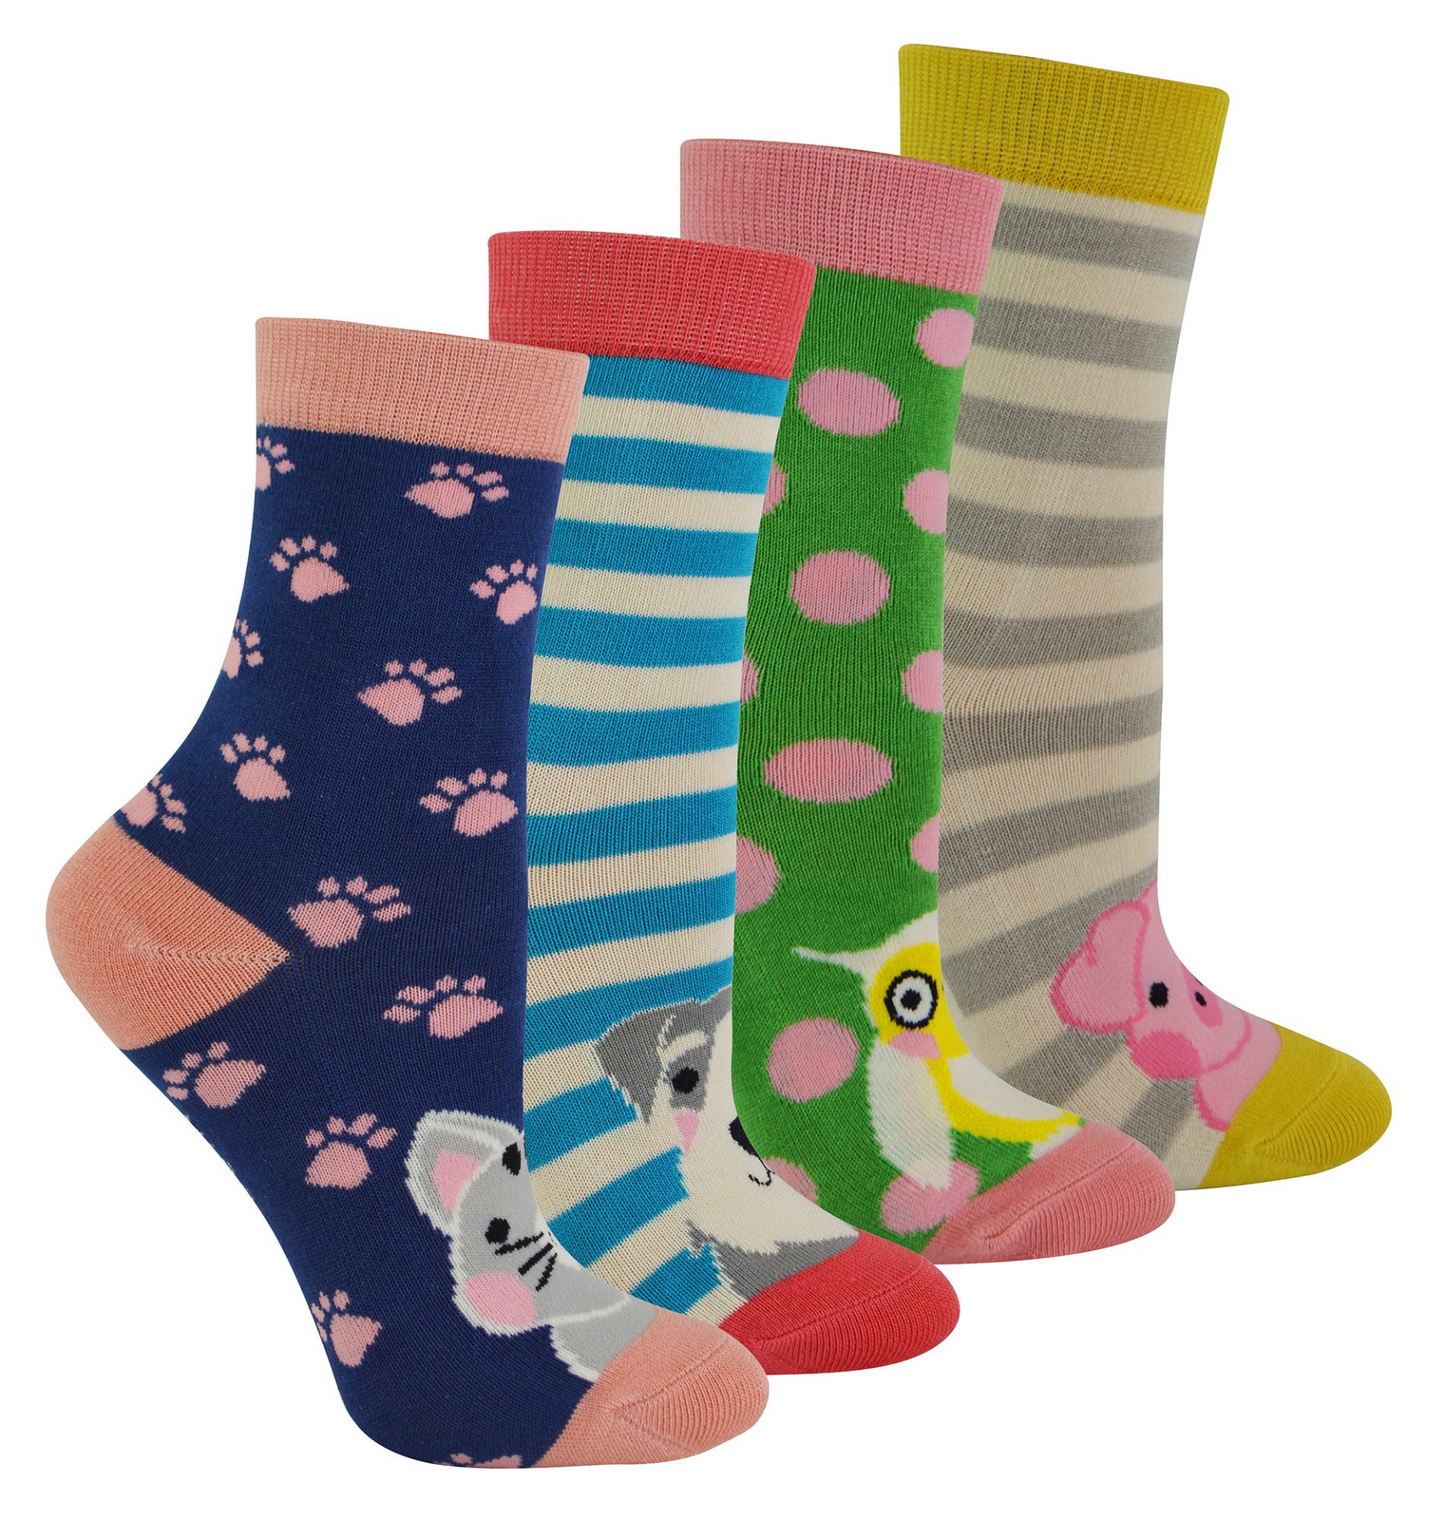 4 Pack Girls Novelty Bamboo Socks